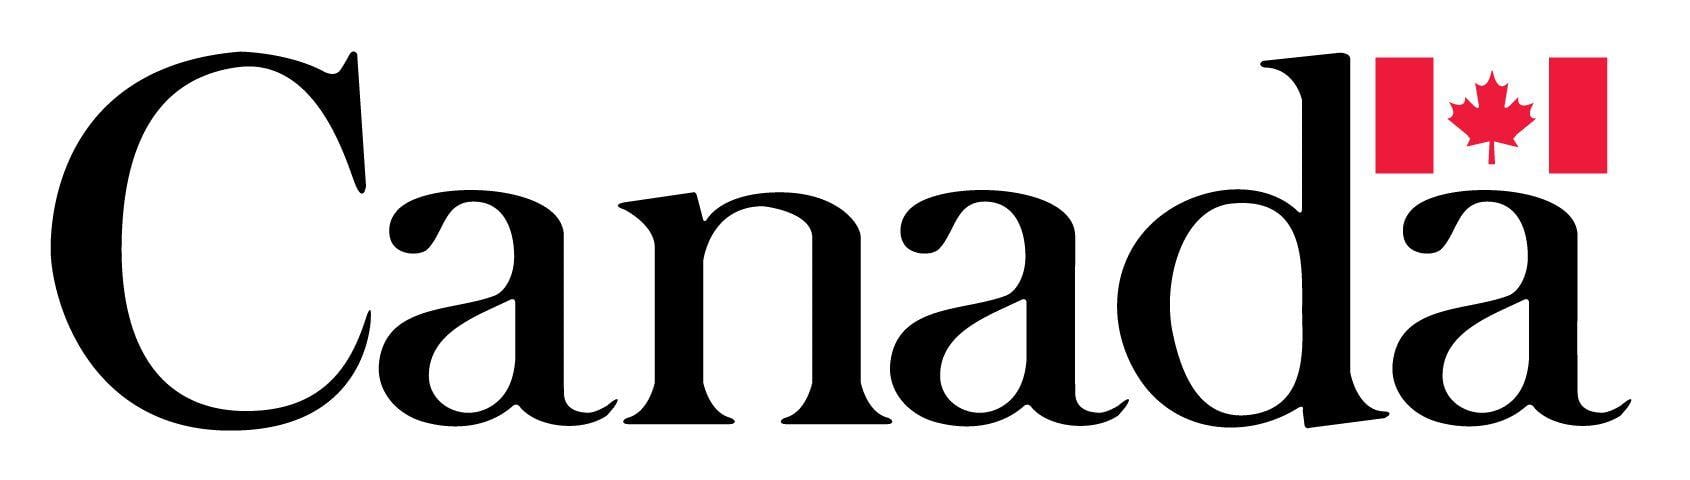 Canada Credits Logo - Image - Canada wordmark logo.jpg | Geo G. Wiki | FANDOM powered by Wikia